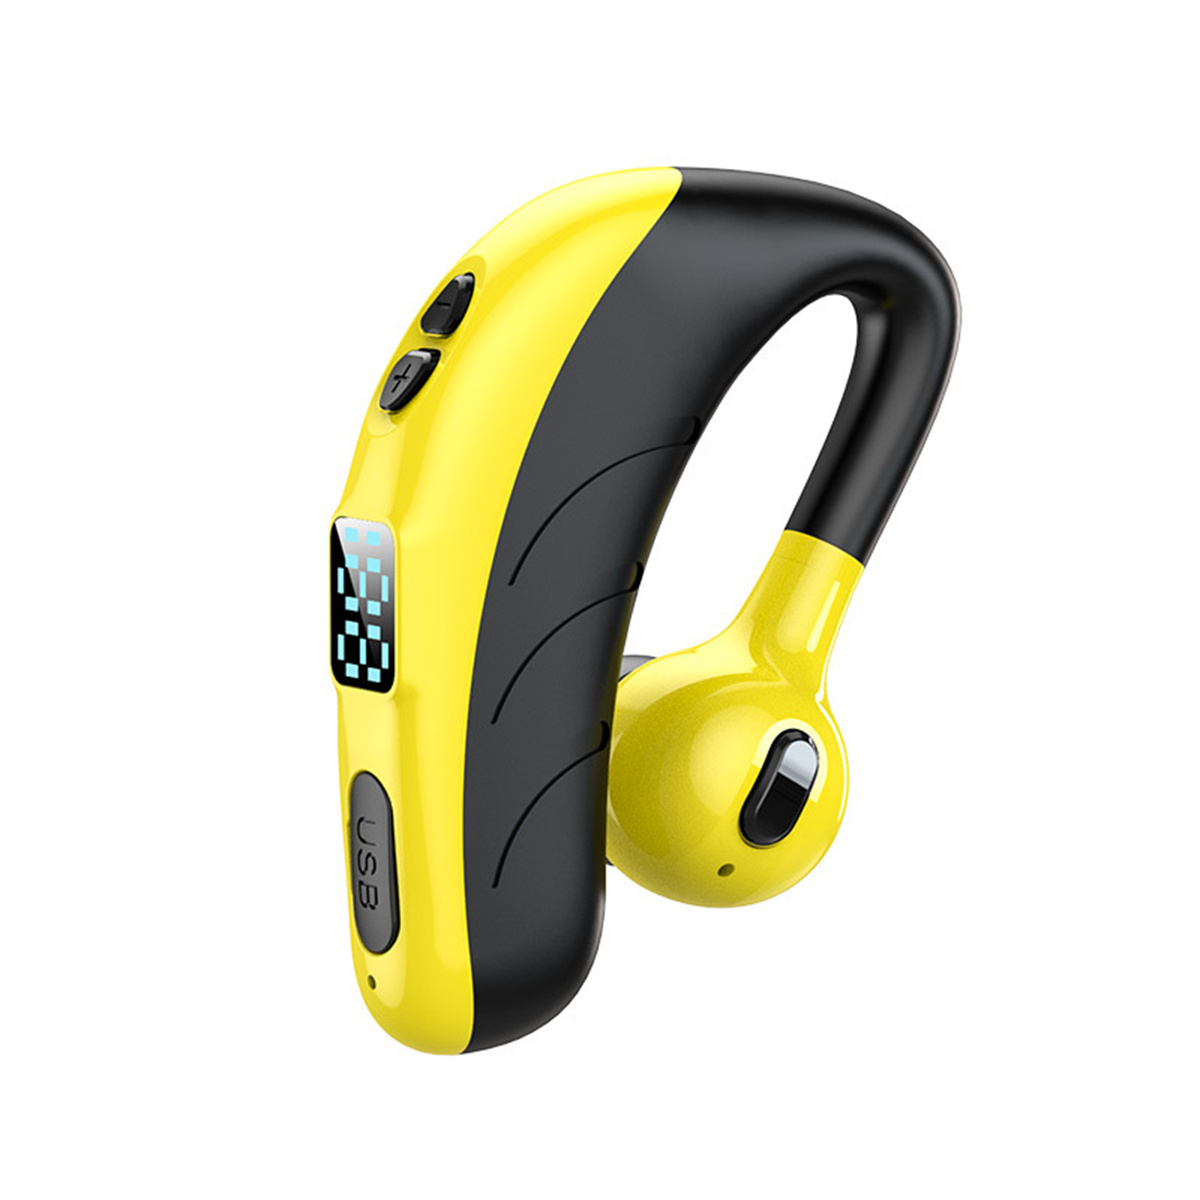 SYNTEK Bluetooth Kopfhörer On-ear earloop Kopfhörer digitale Bluetooth Blau blue Anzeige Bluetooth Geschäftsmodell